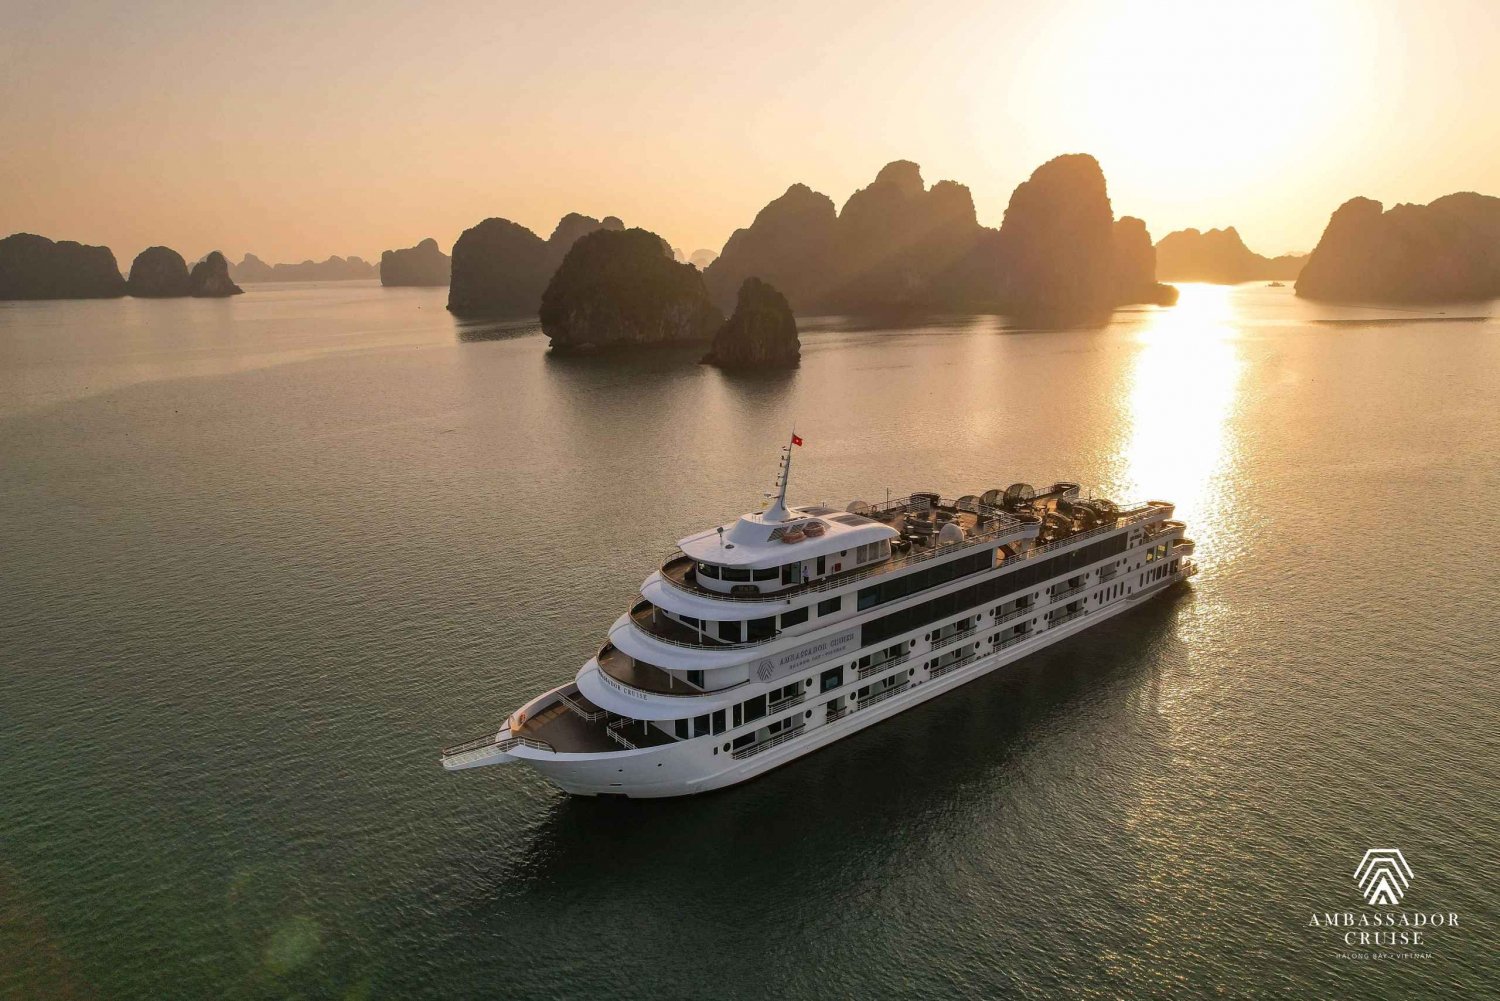 Ambassador Day Cruise- Die beste Tageskreuzfahrt in der Halong-Bucht